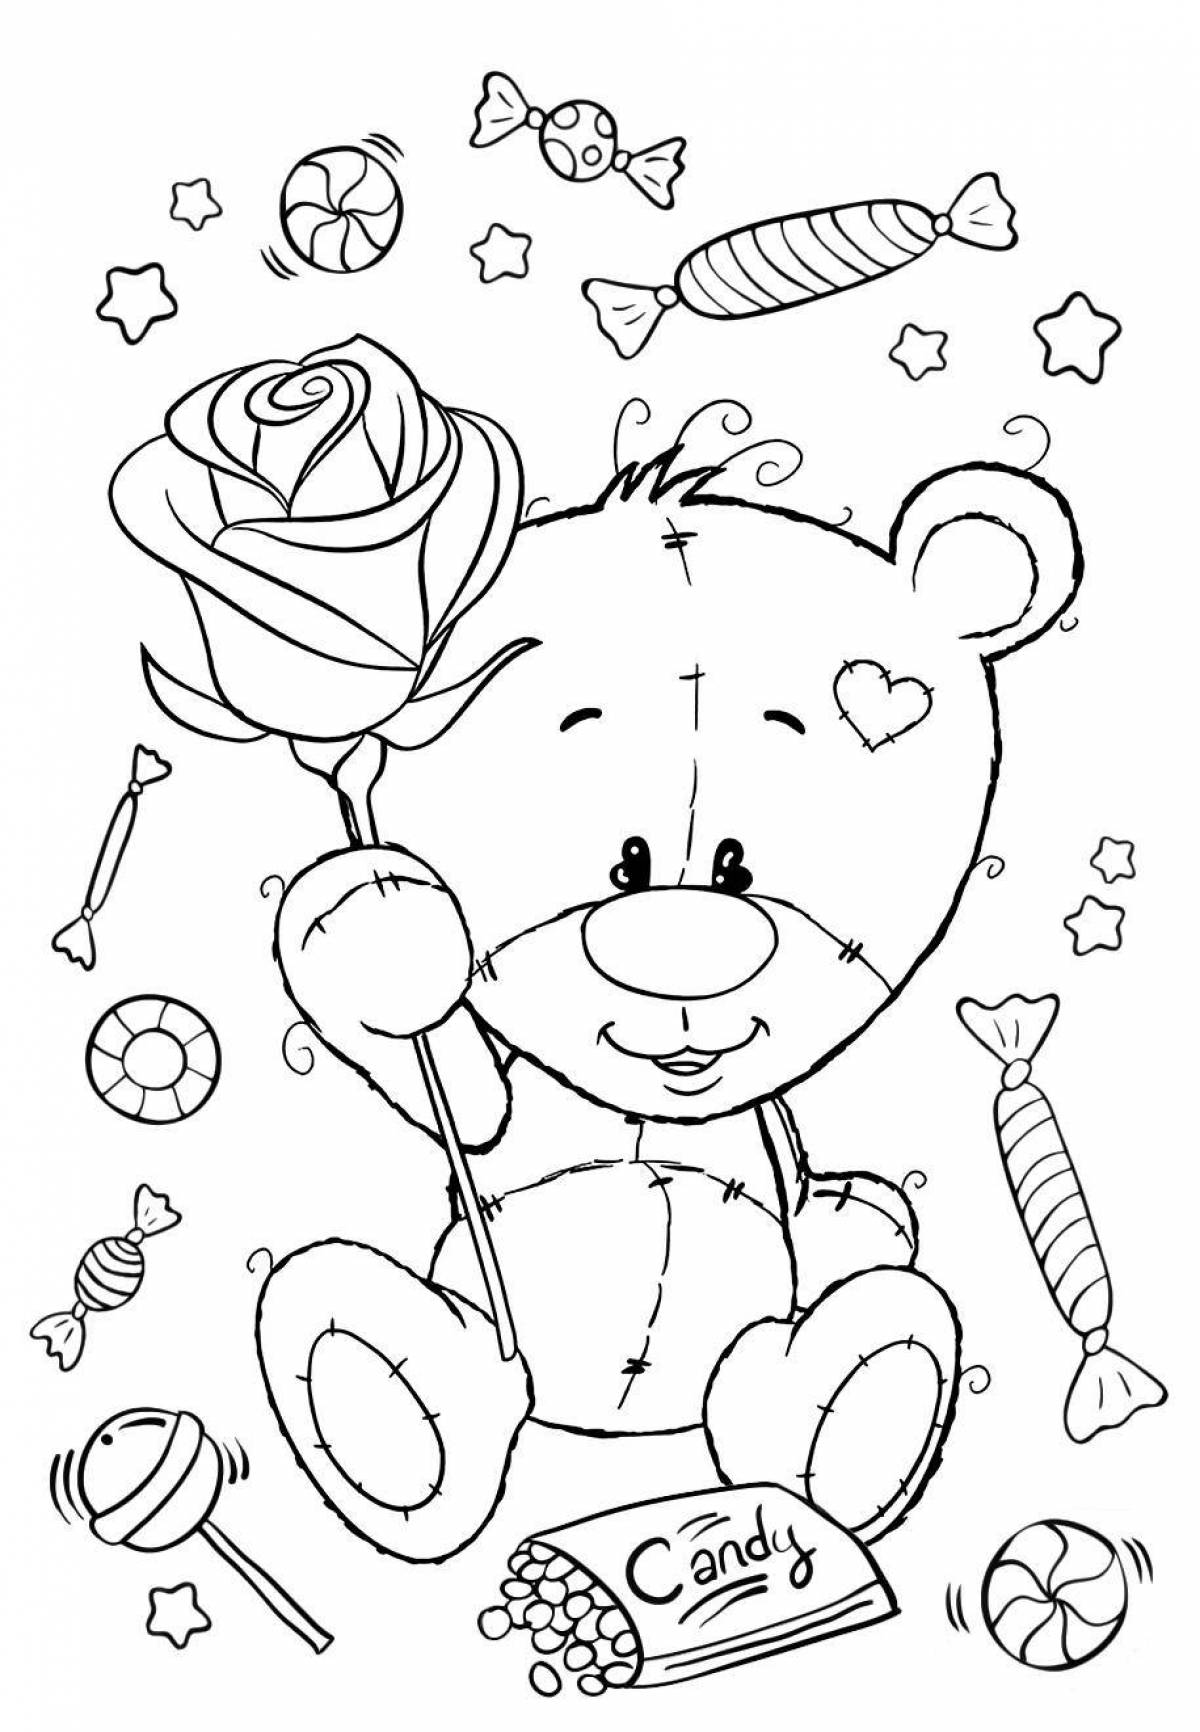 Coloring page cozy teddy